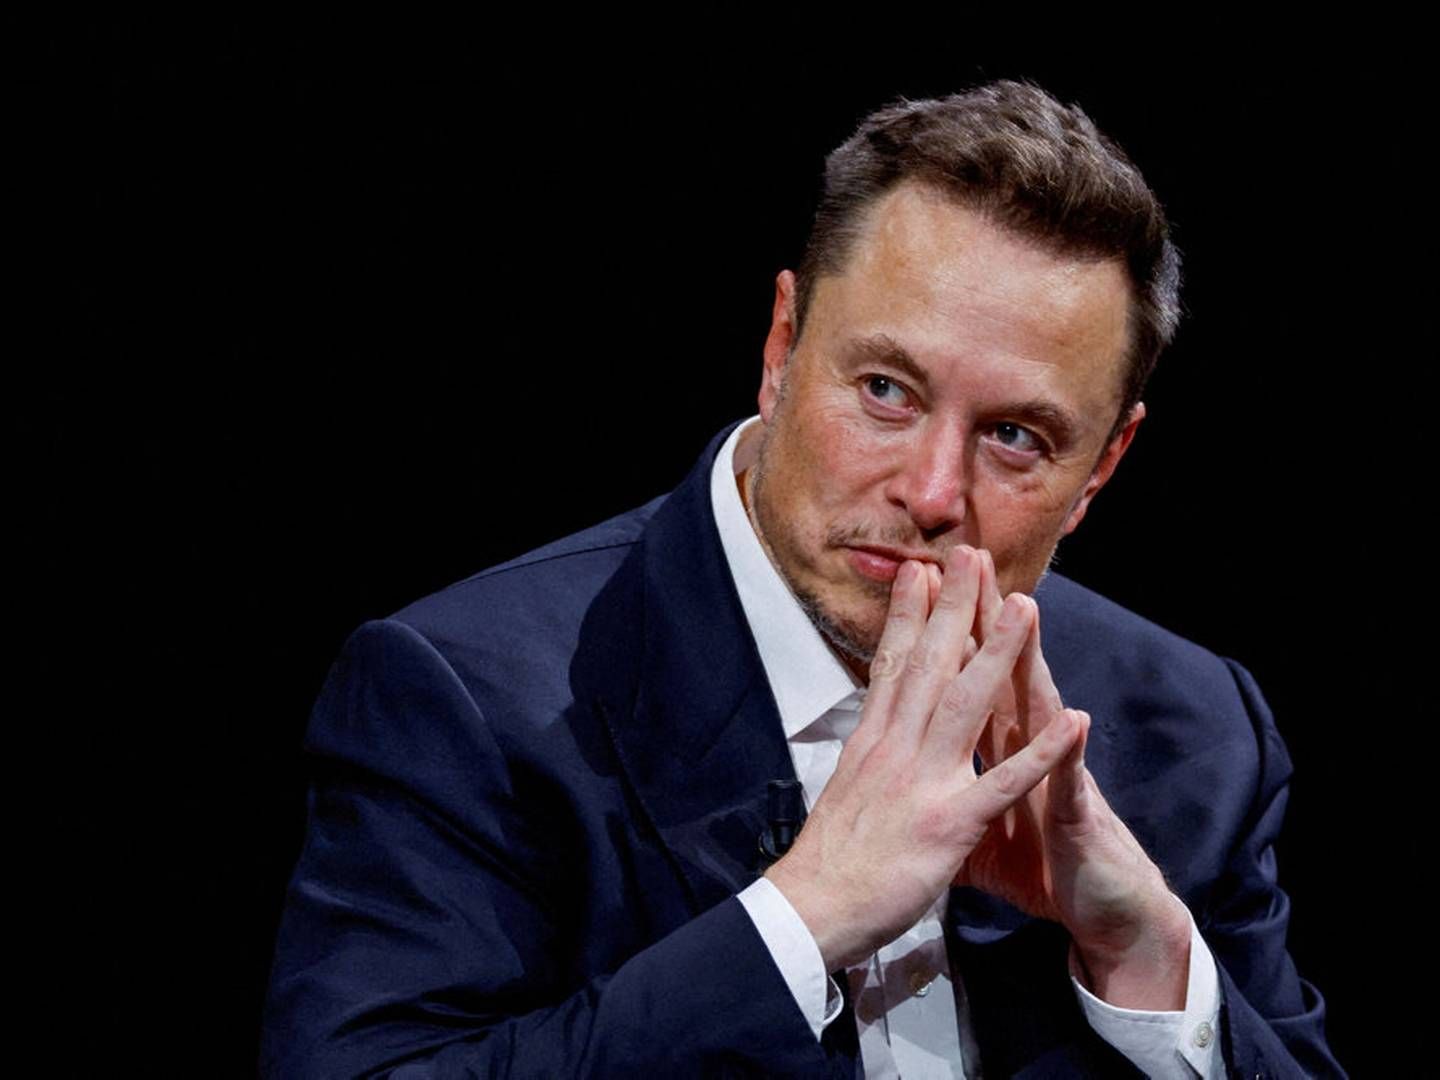 Som modsvar opfordrer Elon Musk i et opslag på X Breton til at fremlægge beviser på desinformation. (Arkivfoto) | Foto: Gonzalo Fuentes/Reuters